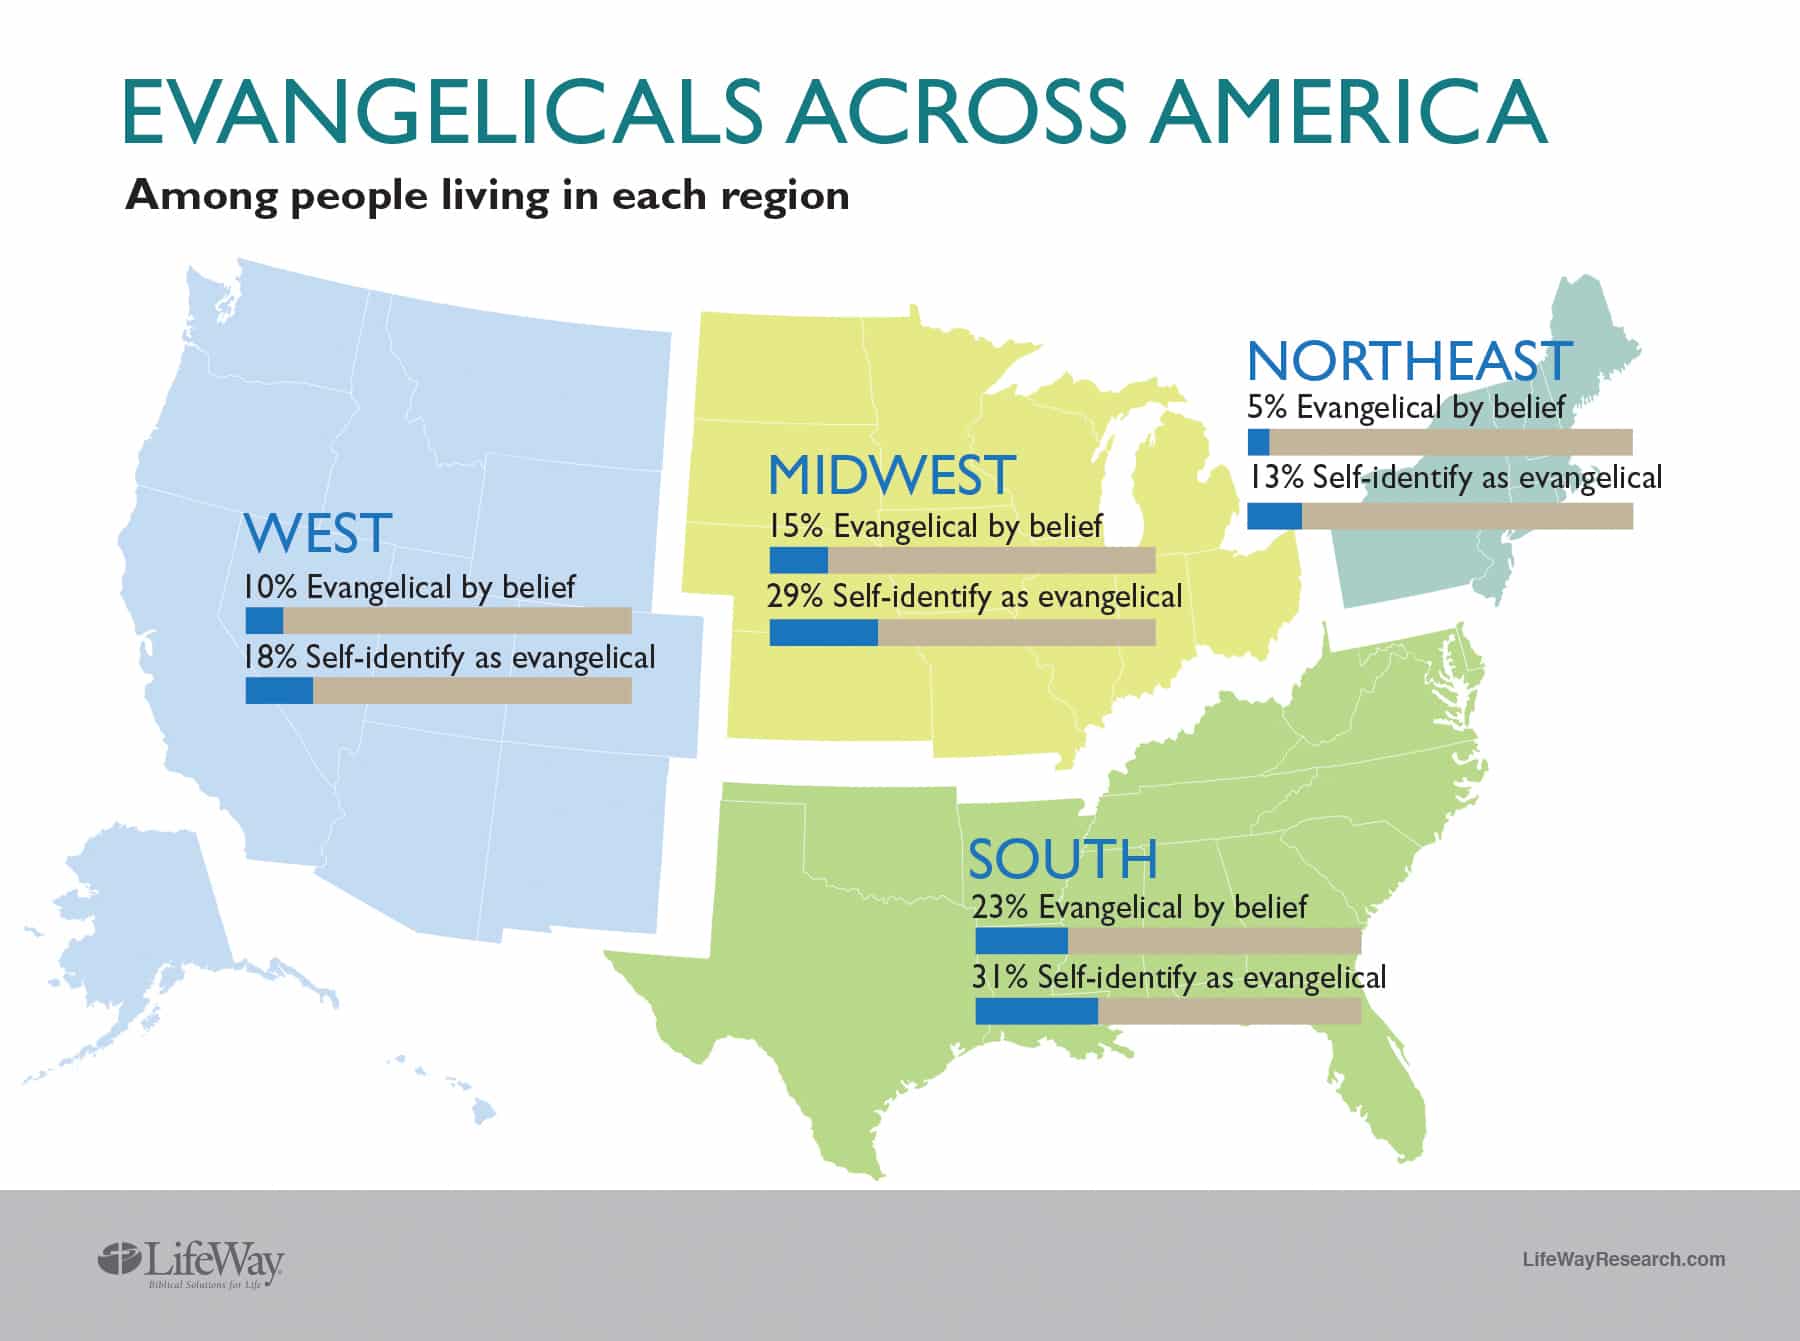 BP Evangelicals across America